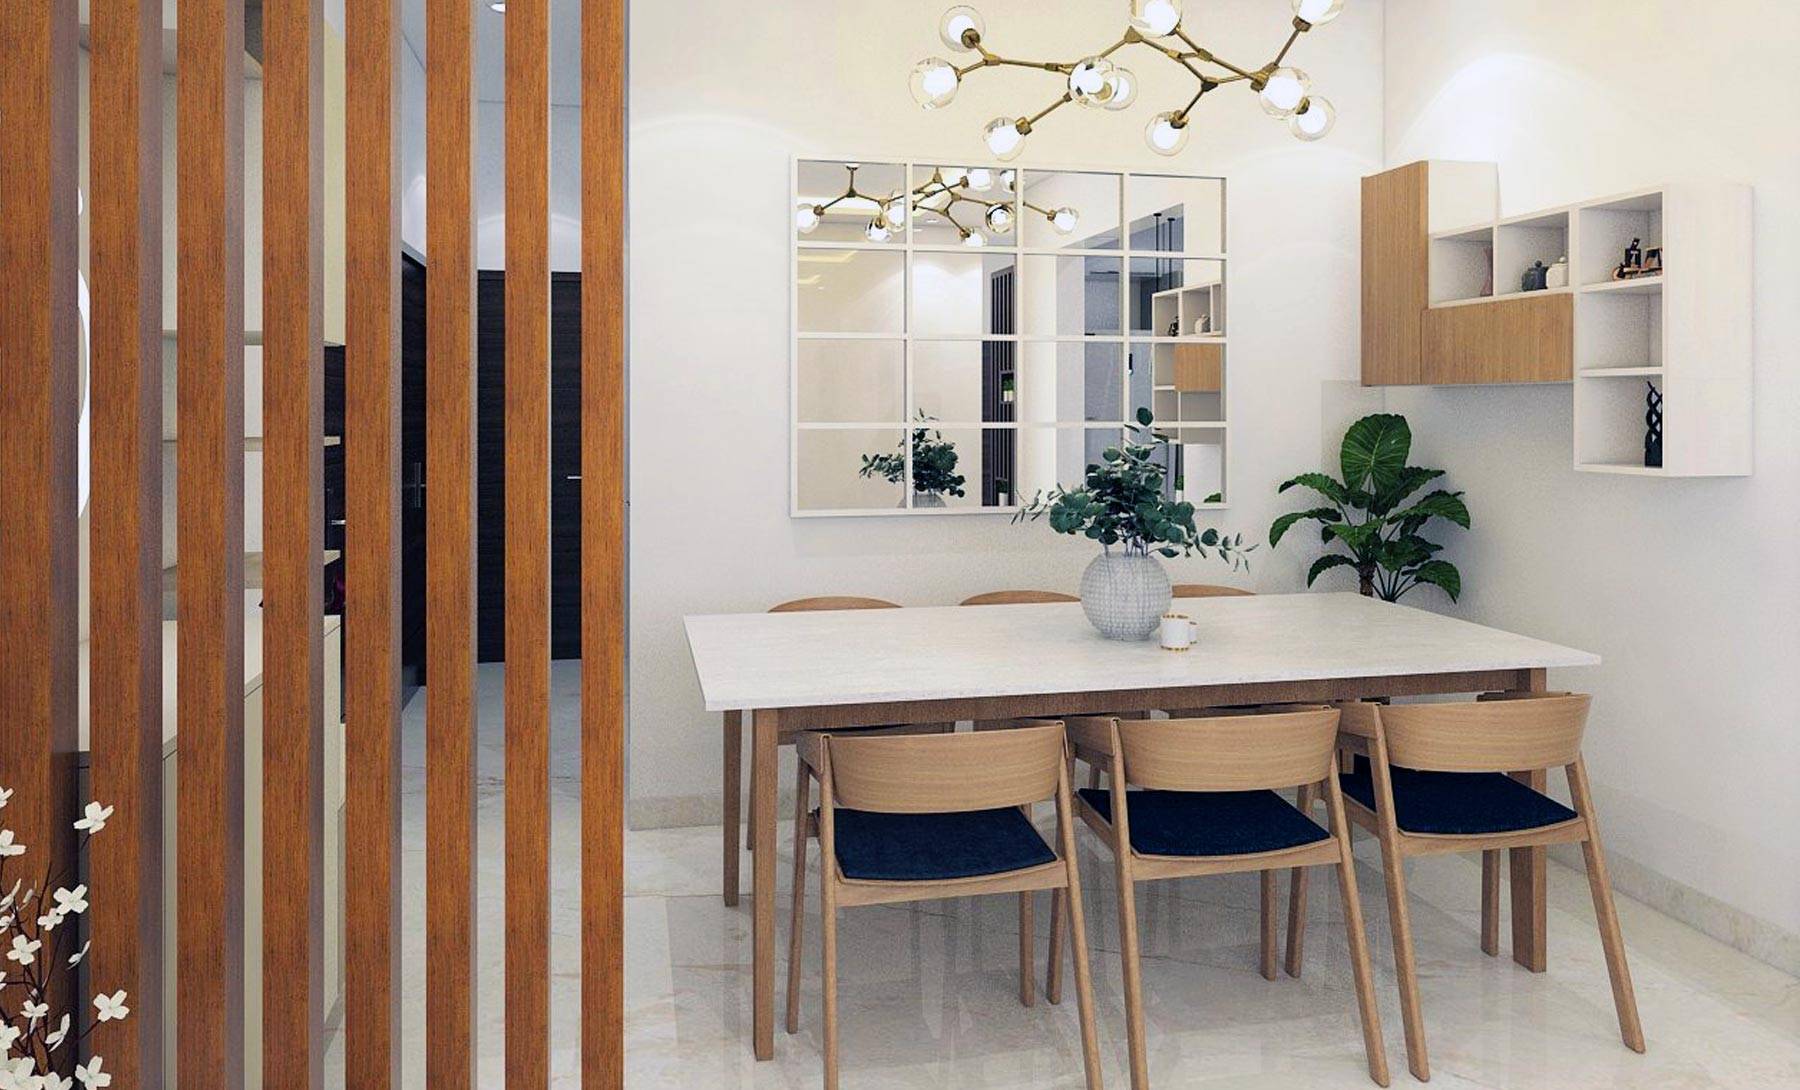 Kyrah Design, Dining room interiors